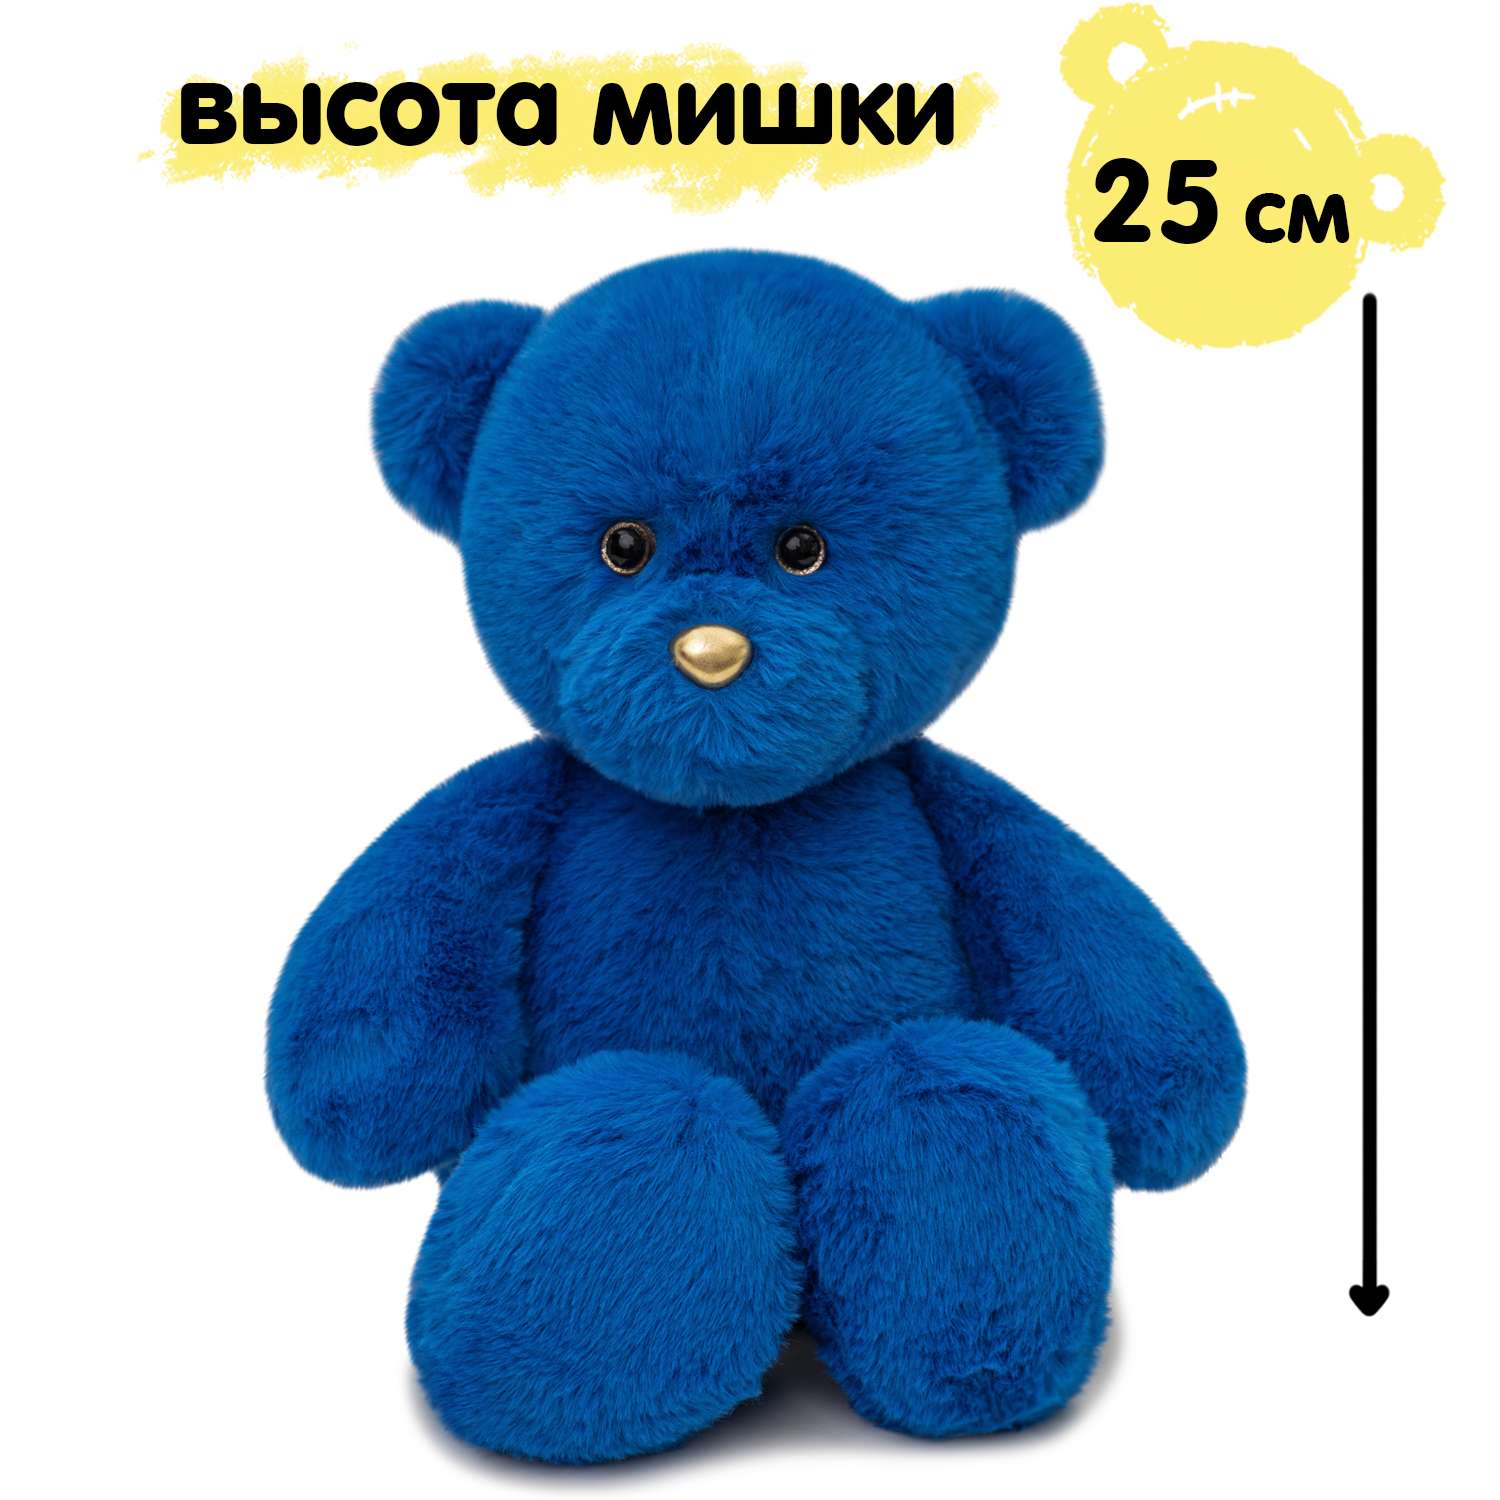 Мягкая игрушка KULT of toys Плюшевый мишка 35 см цвет синий - фото 5